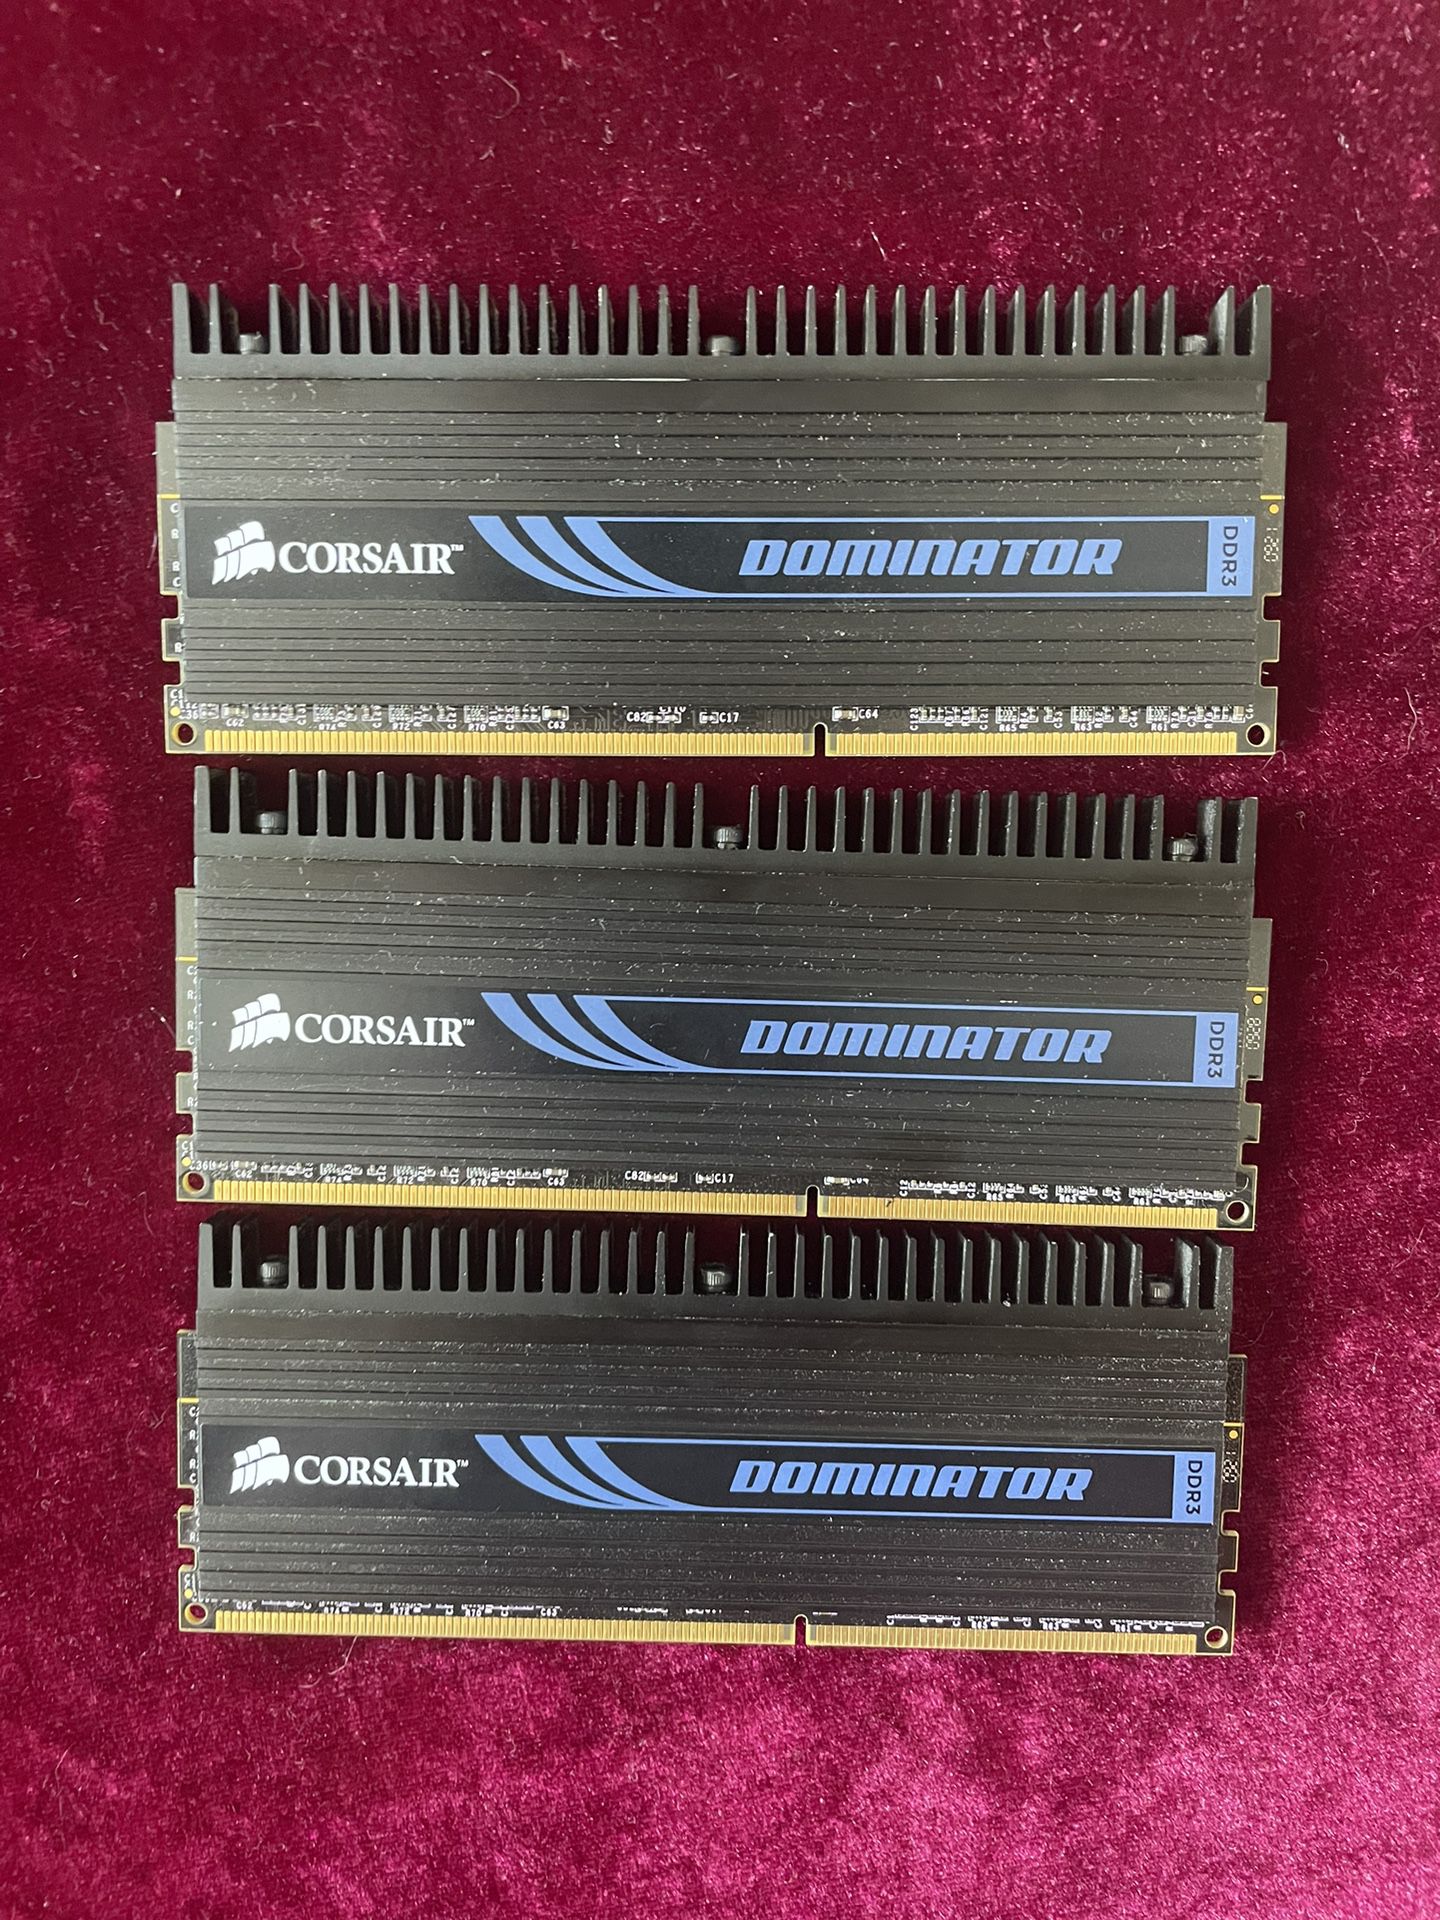 Corsair PC3-12800 (DDR3-1600) 3x2GB DIMM 1600 MHz PC3-12800 SDRAM Memory 6gb